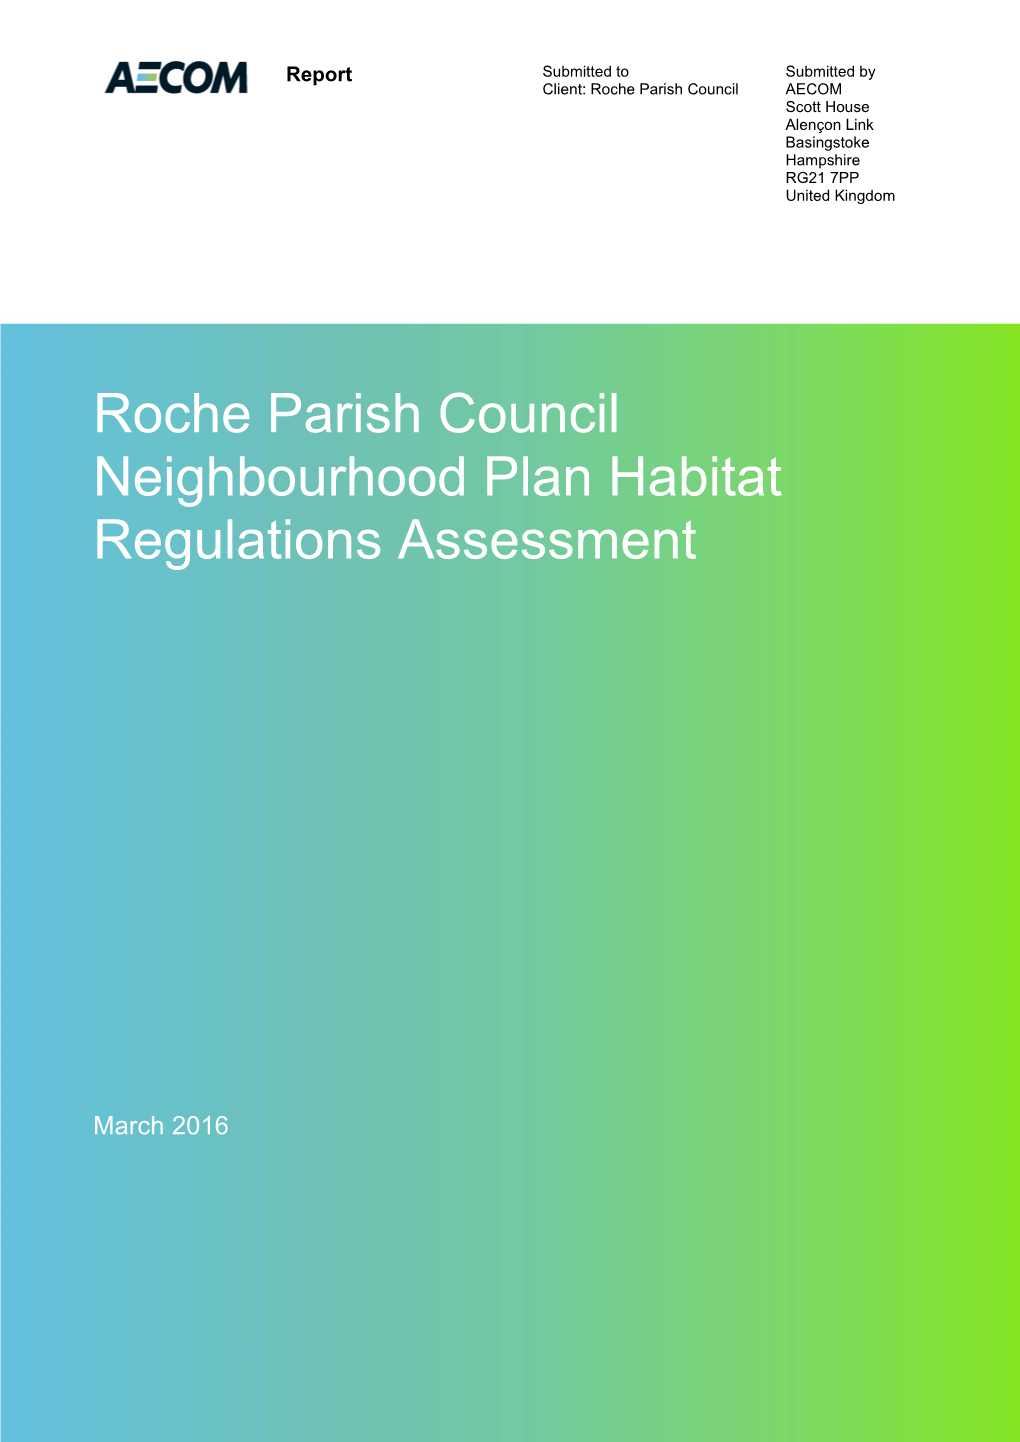 Roche Parish Council Neighbourhood Plan Habitats Regulations Assessment